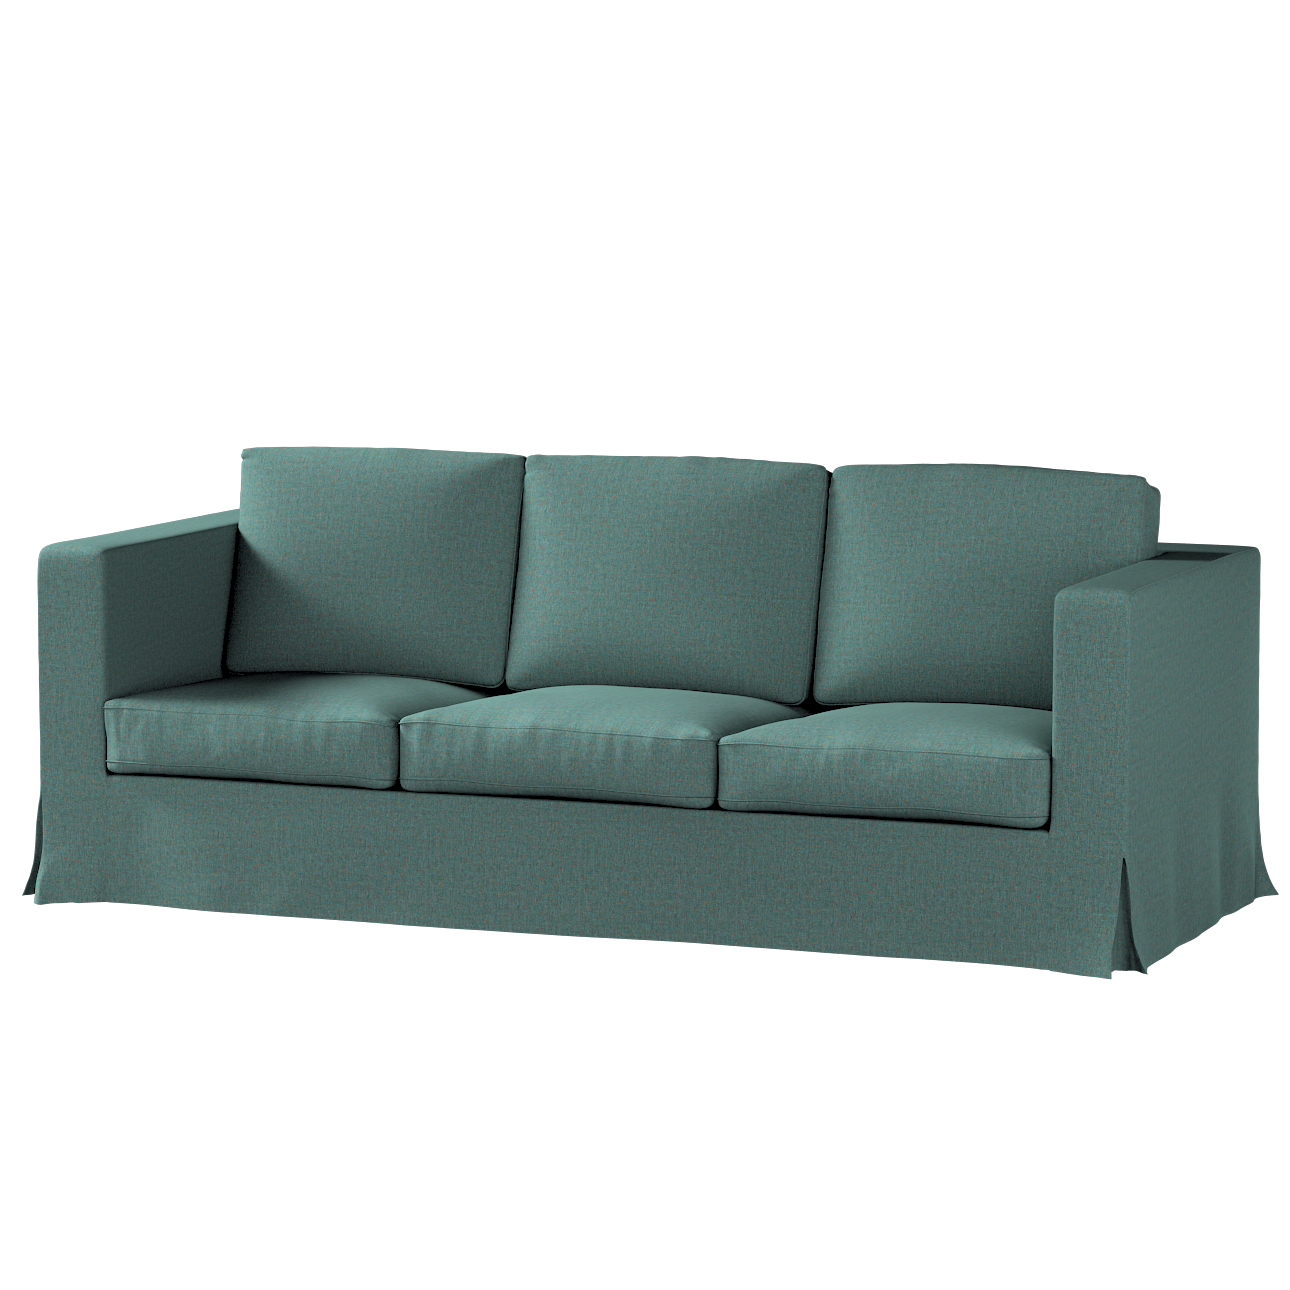 Bezug für Karlanda 3-Sitzer Sofa nicht ausklappbar, lang, türkis, Bezug für günstig online kaufen